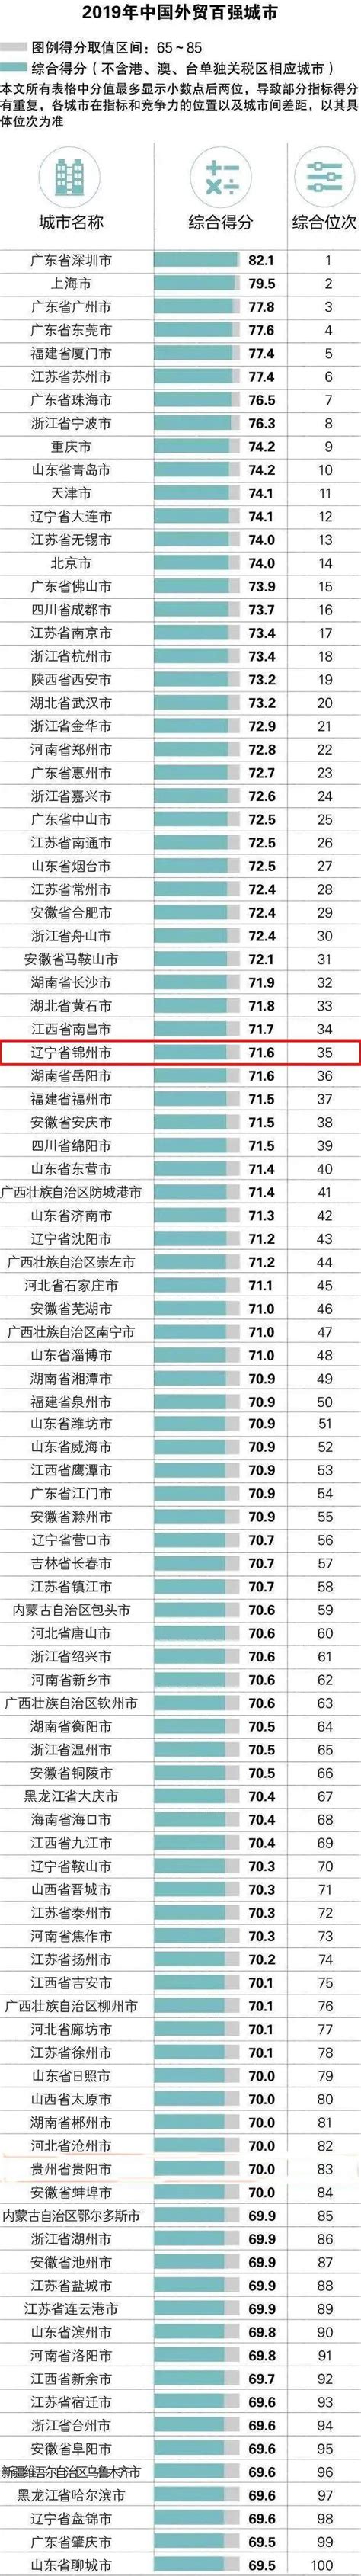 锦州“全国外贸百强城市”排名提升3位